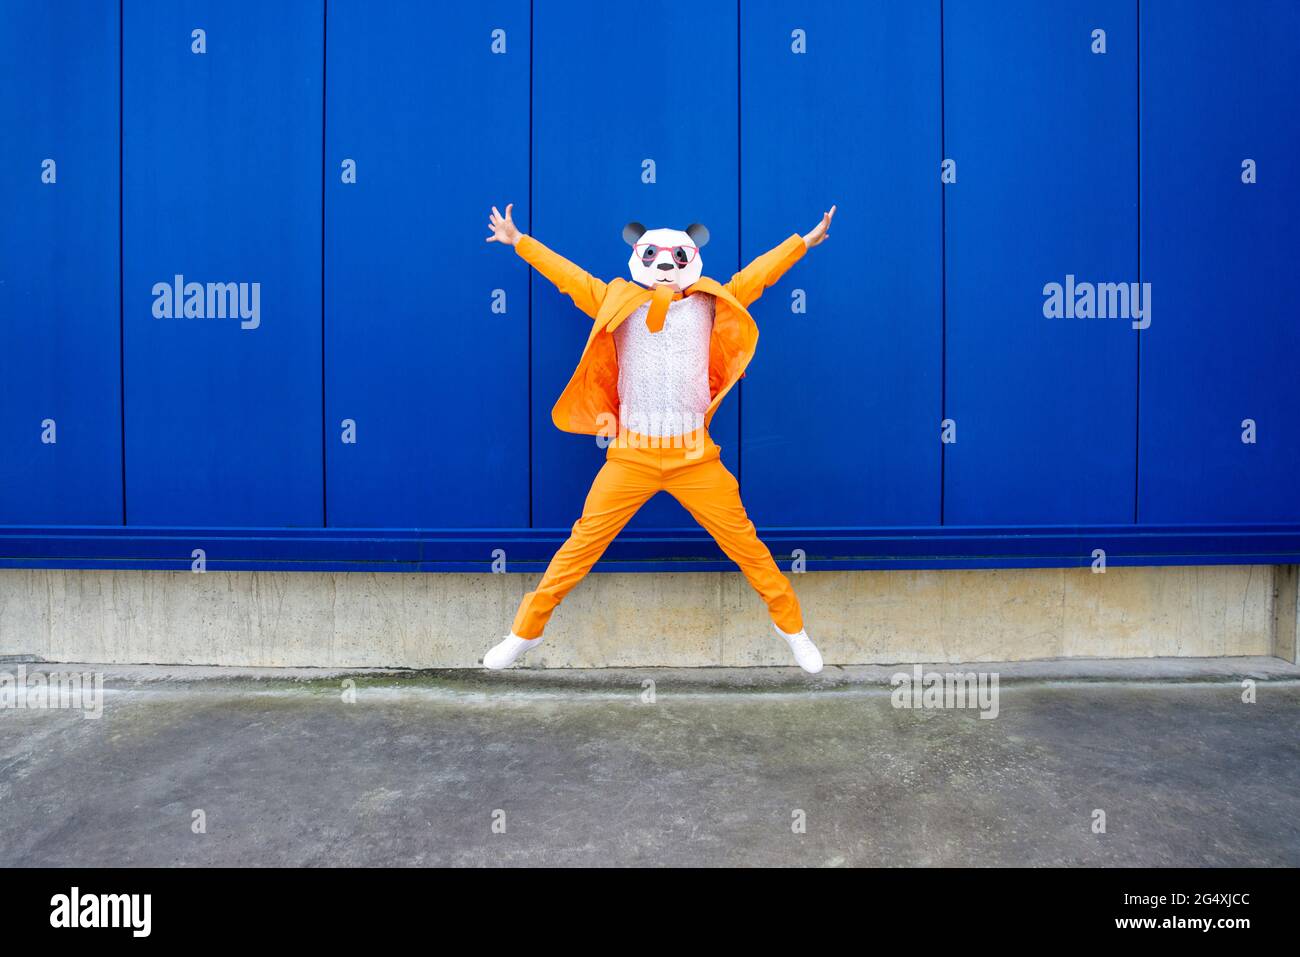 Homme portant un costume orange vif et un masque de panda sautant contre le mur bleu Banque D'Images